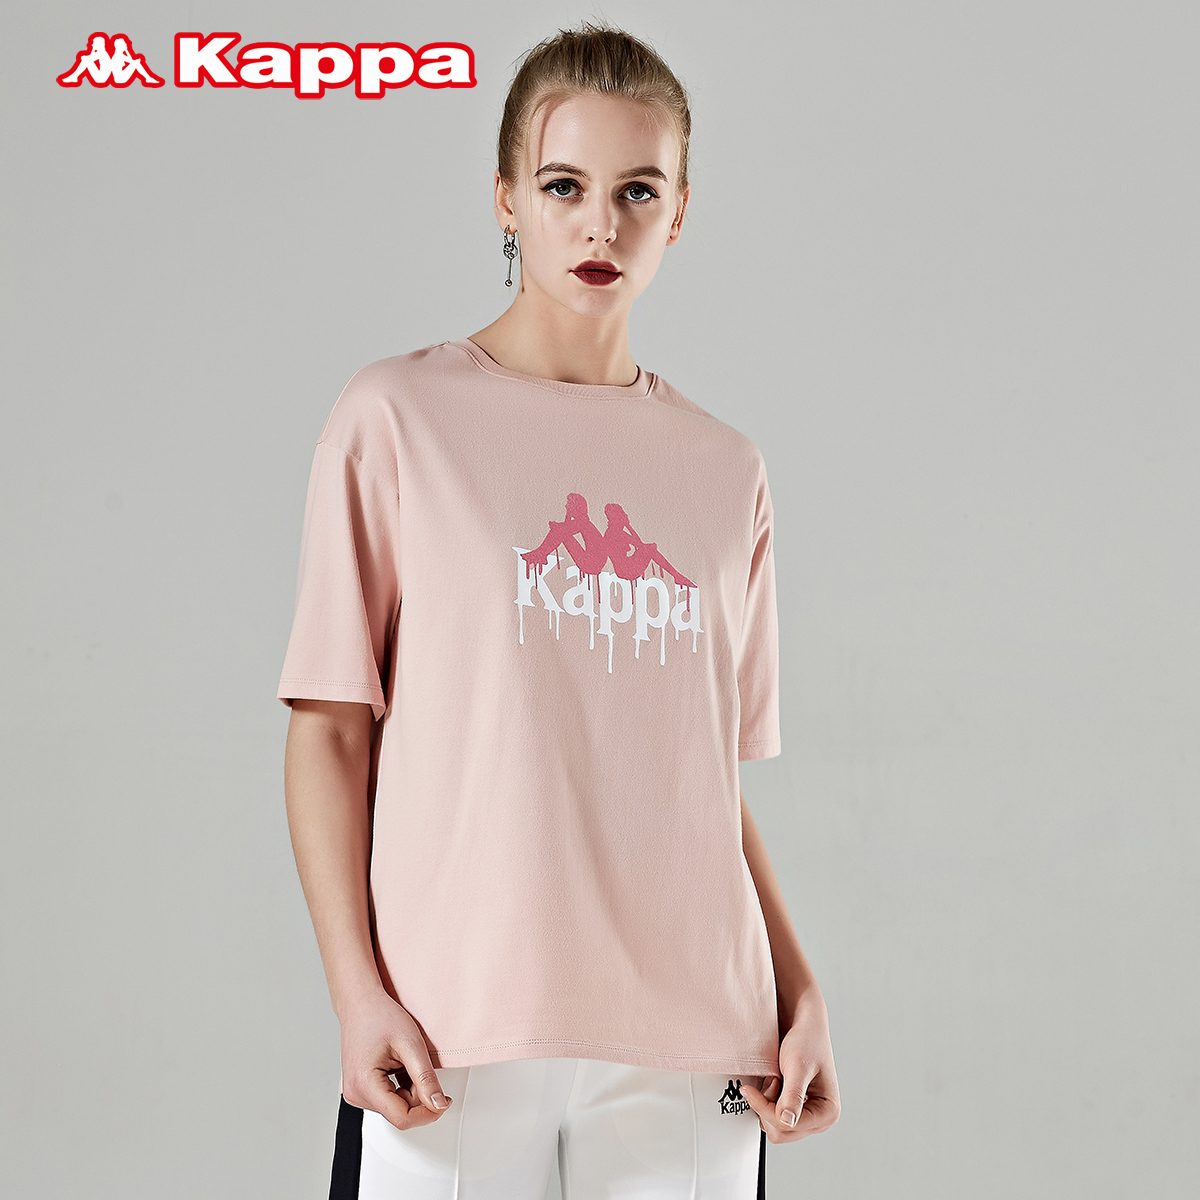 Kappa卡帕 女款运动短袖休闲T恤夏季半袖 2019新款|K0922TD88D